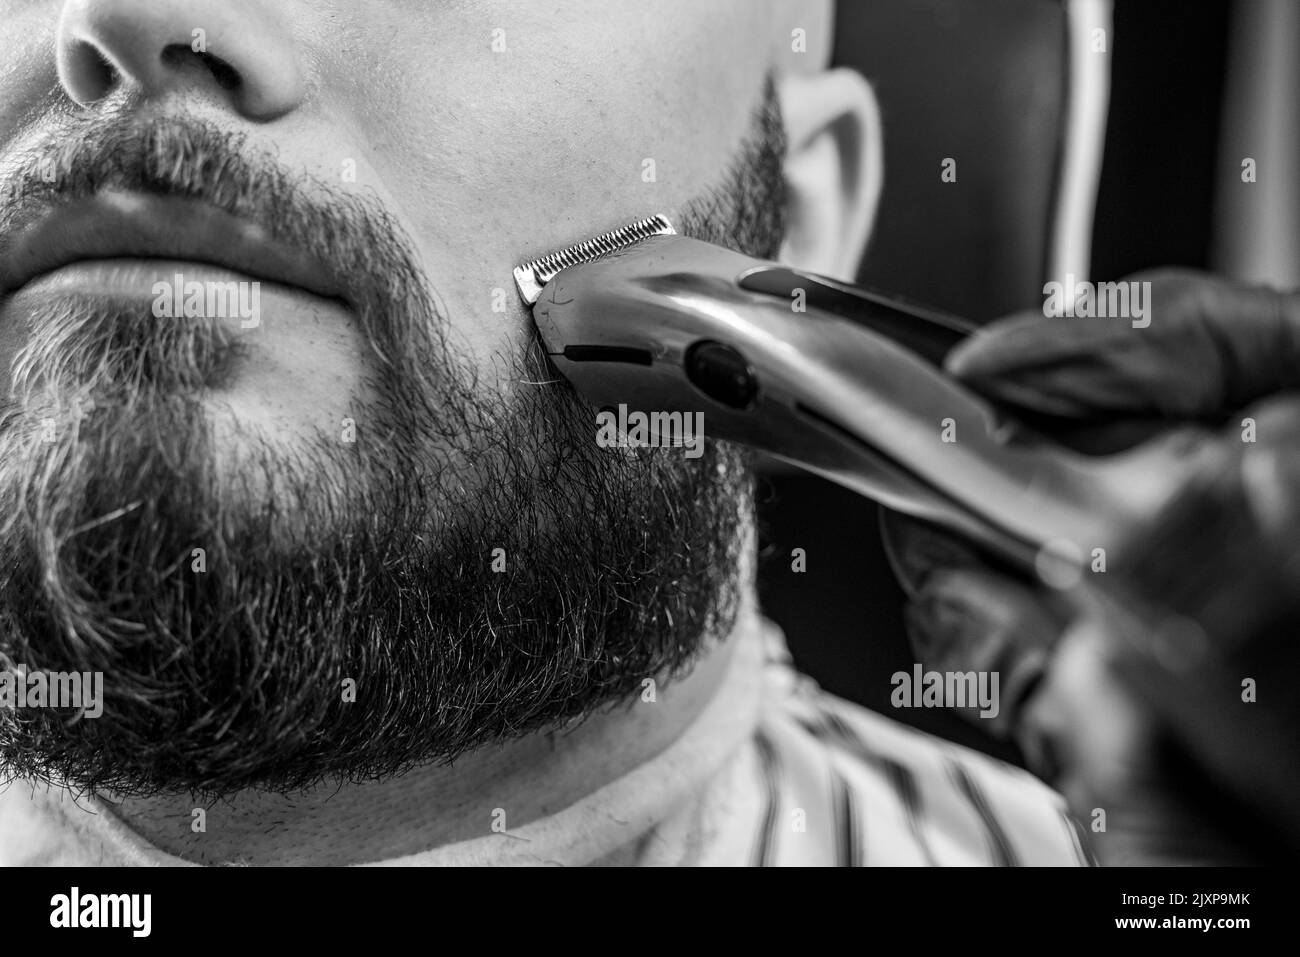 Homme taillé sa barbe avec un rasoir électrique dans un salon de coiffure. Image en noir et blanc. Banque D'Images